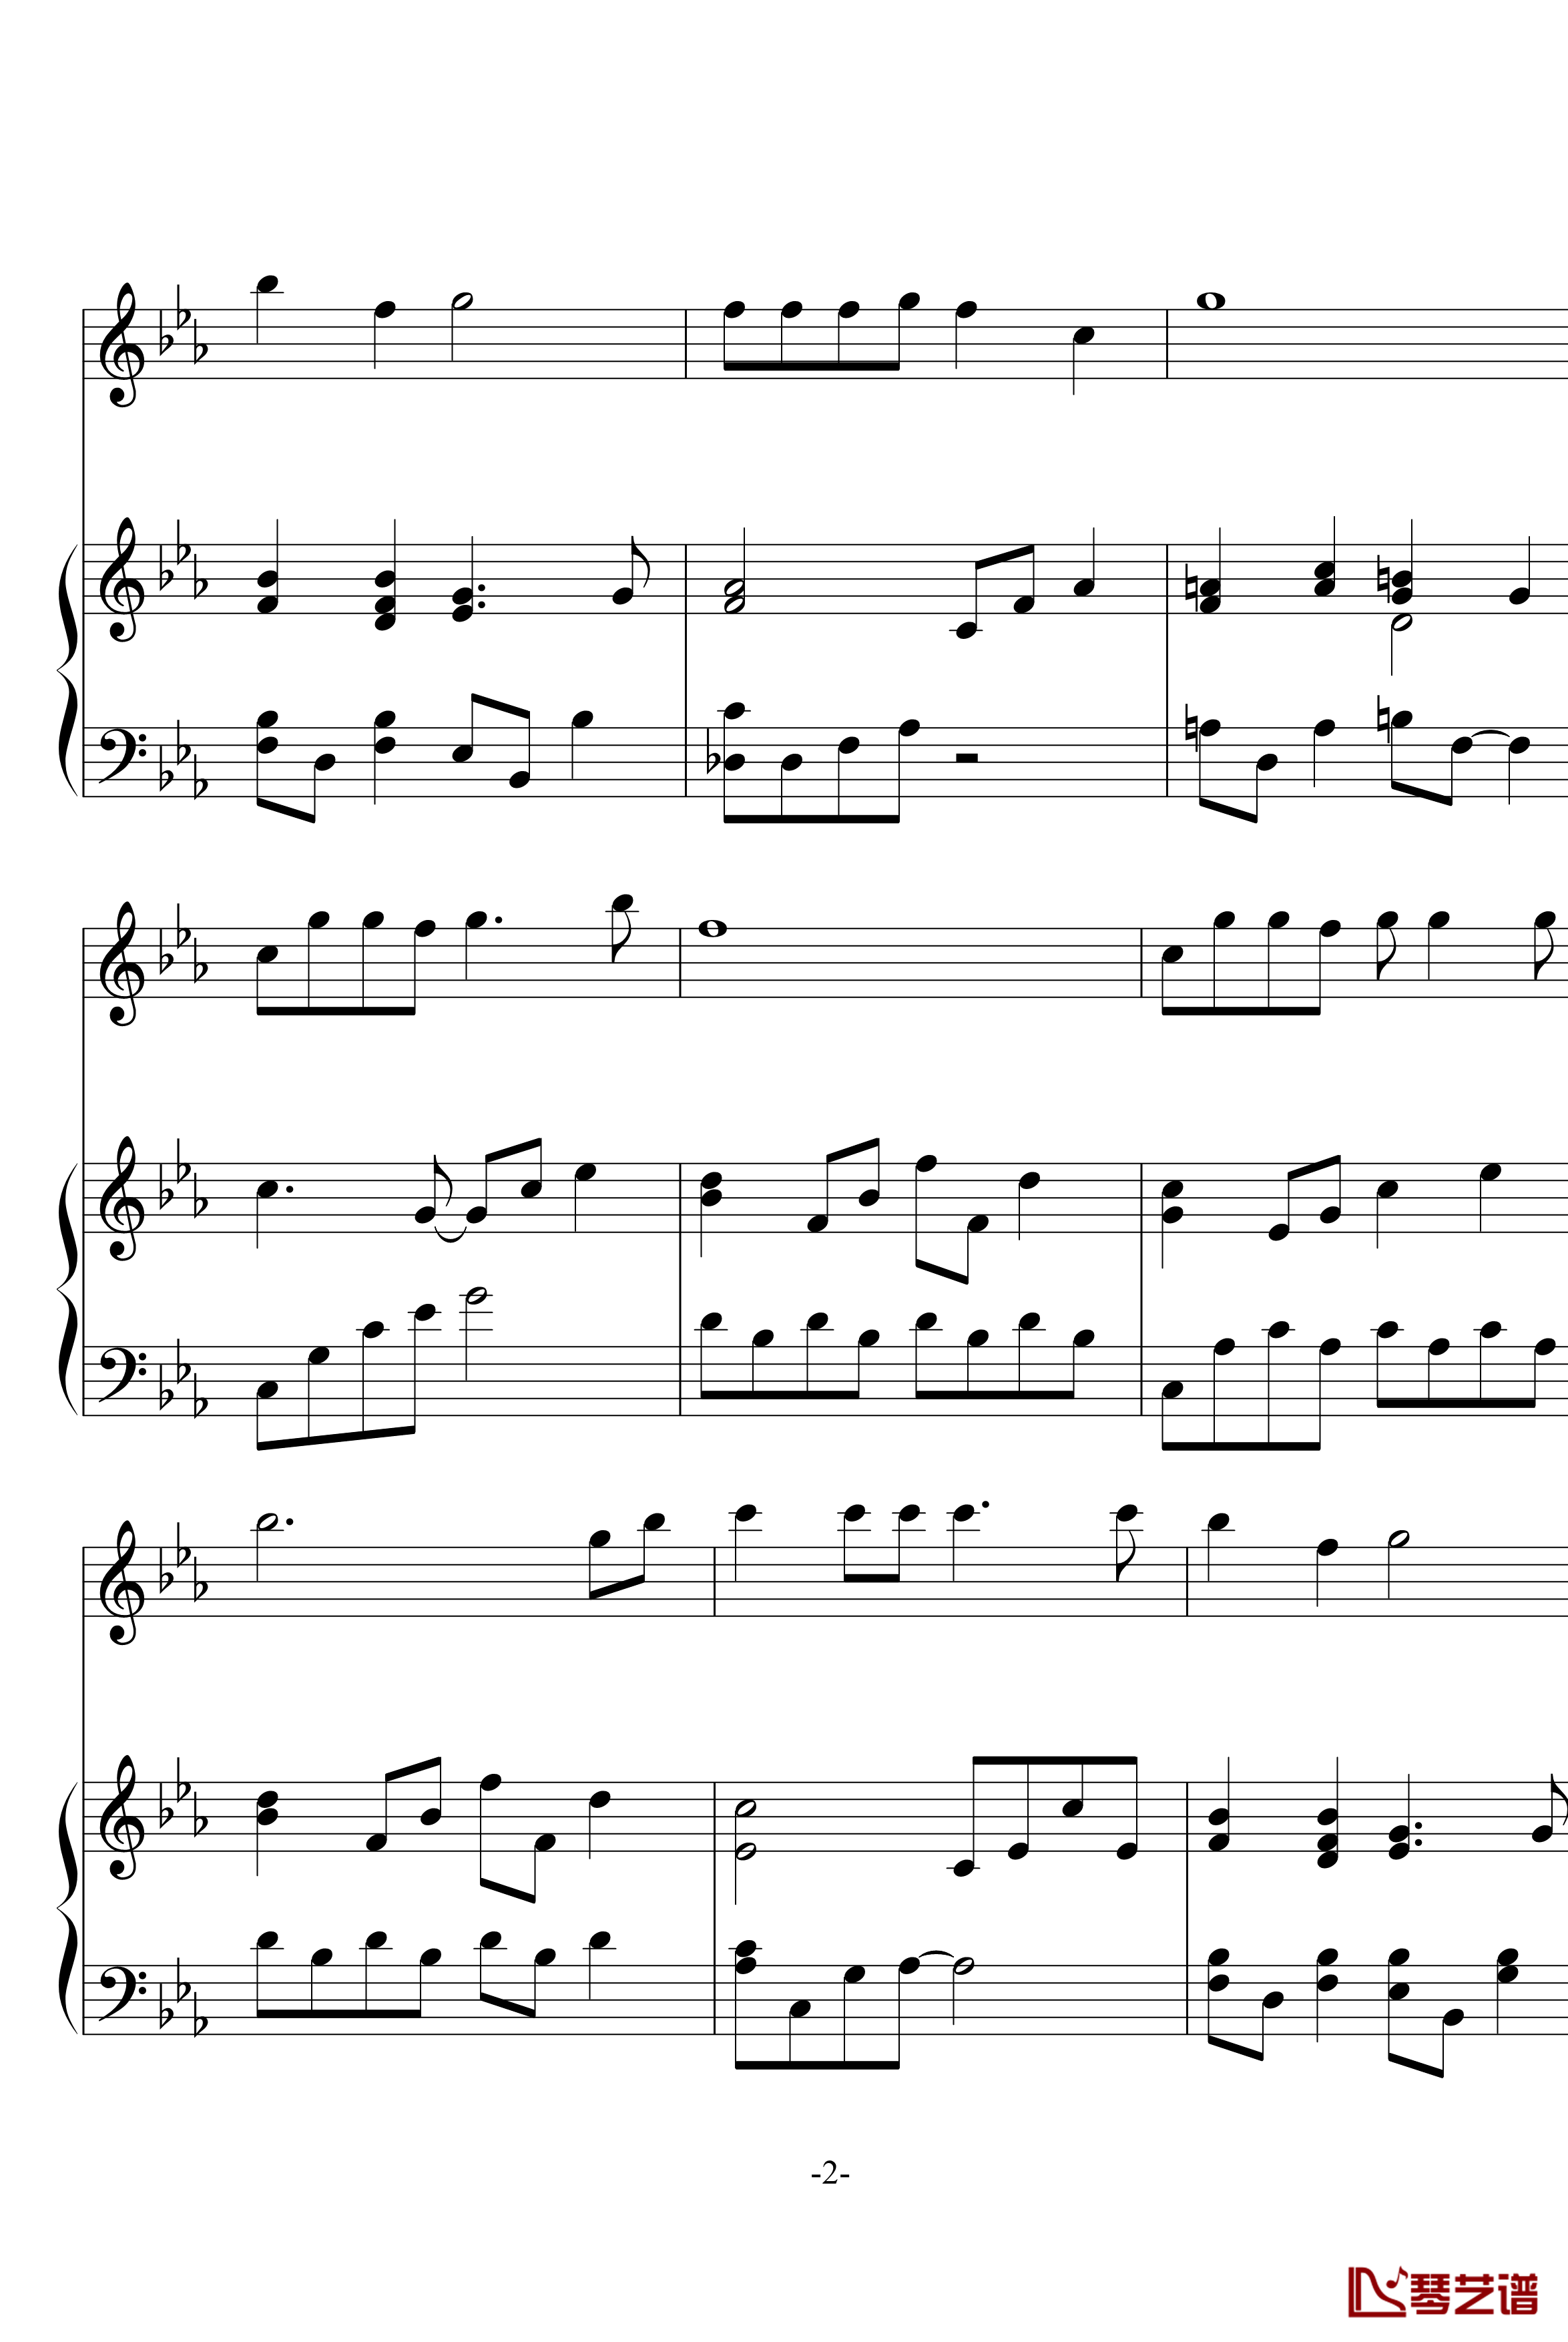 幽灵公主笛子与钢琴钢琴谱-OST-久石让2